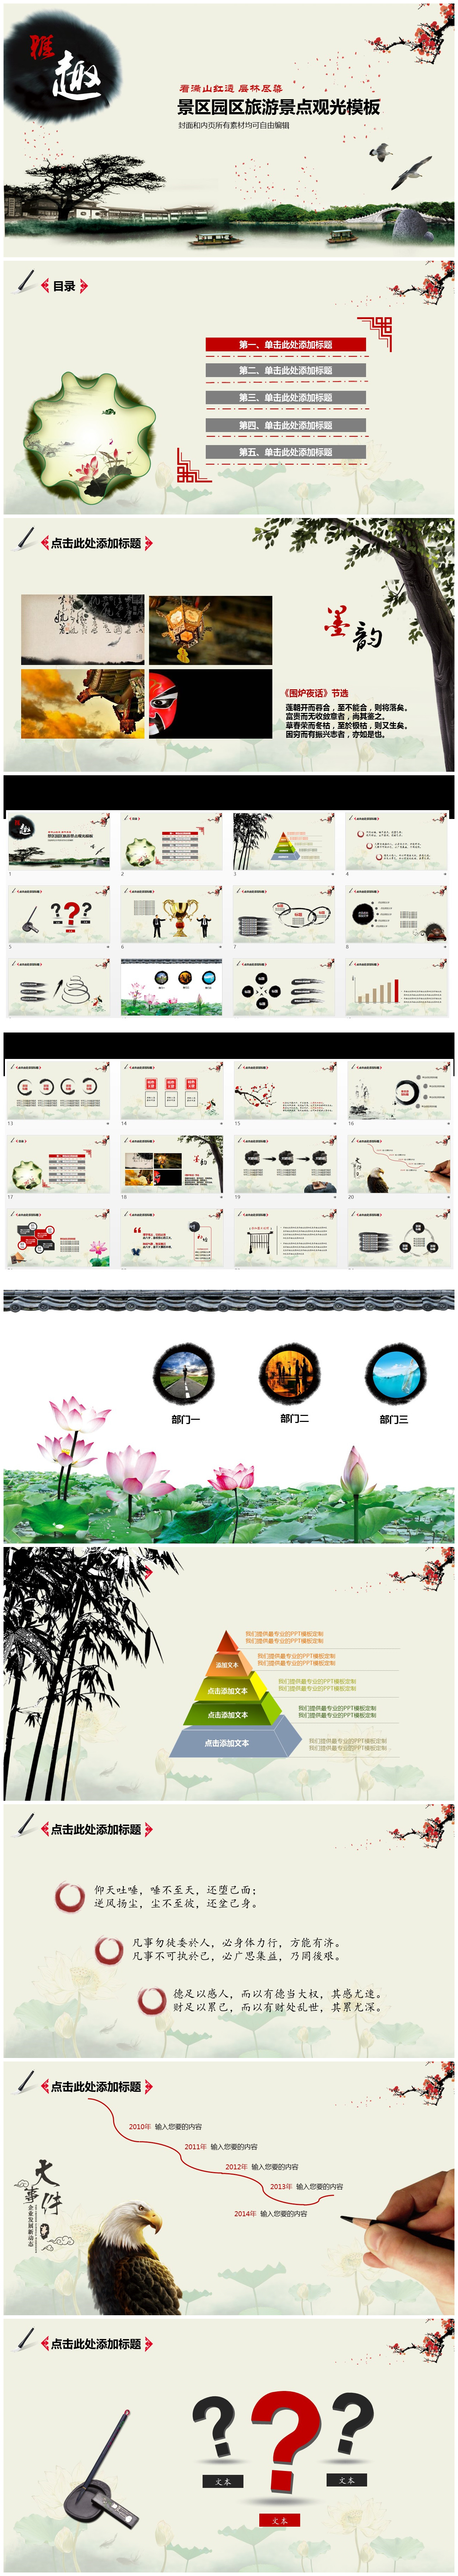 水墨畫中國風旅游觀光培訓PPT模板下載